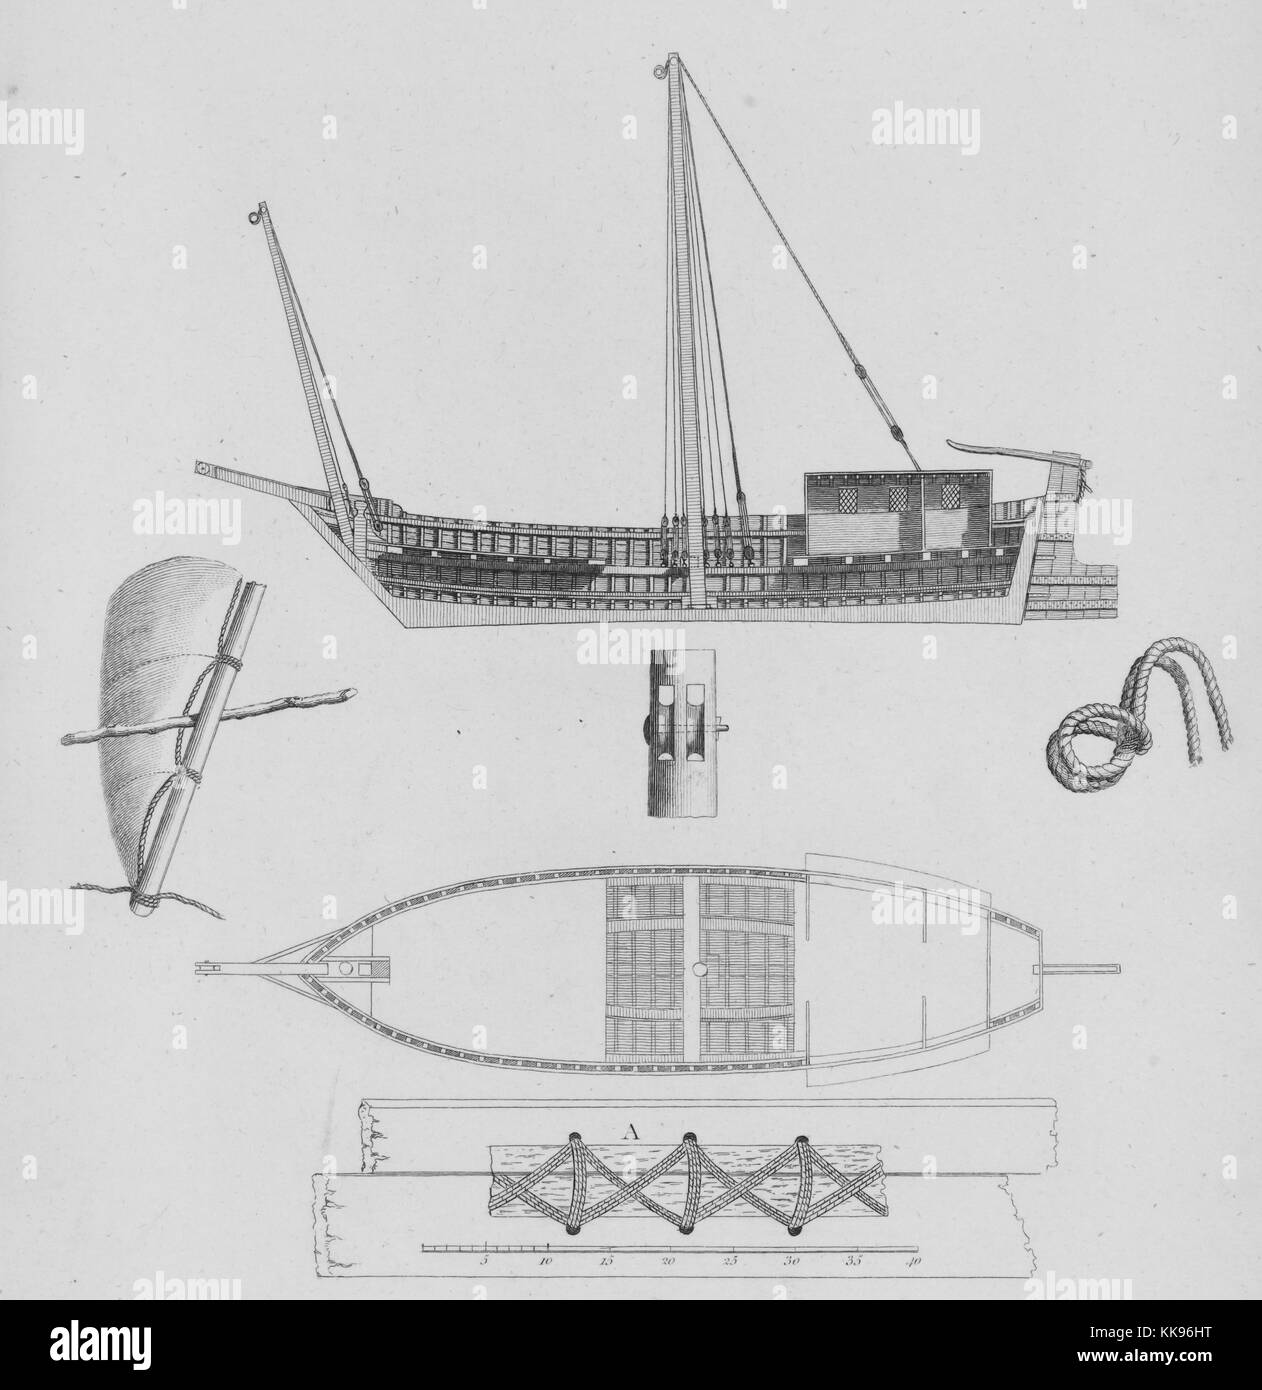 Illustration des différentes sections et parties d'un bateau égyptien Canja, illustrant comment les bandes sont cousues ensemble sans clous, 1805. À partir de la Bibliothèque publique de New York. Banque D'Images